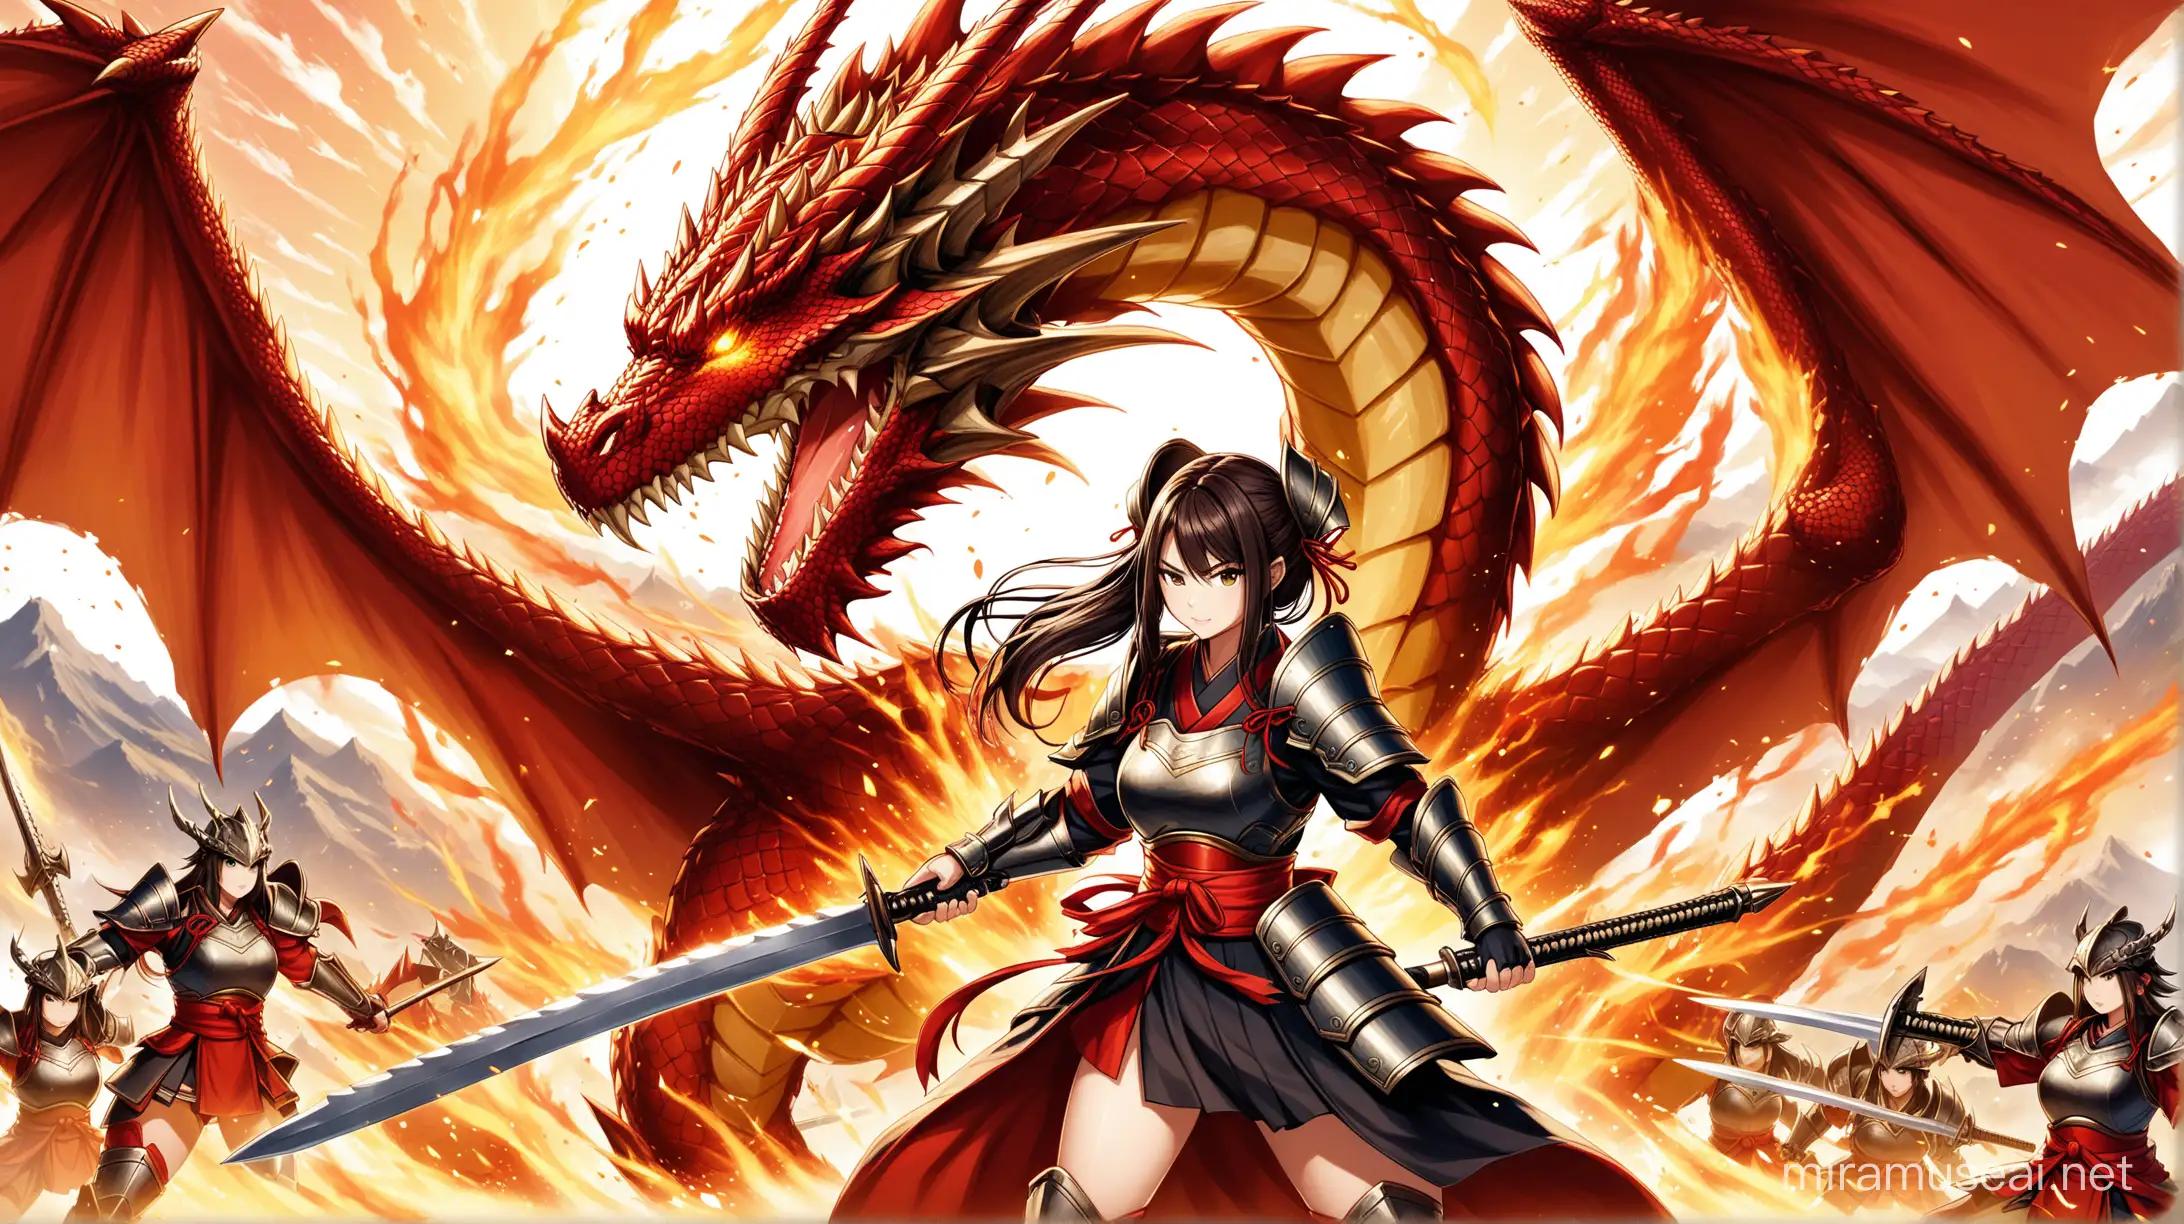 Fierce Japanese Warrior Women in Epic Dragon Battle